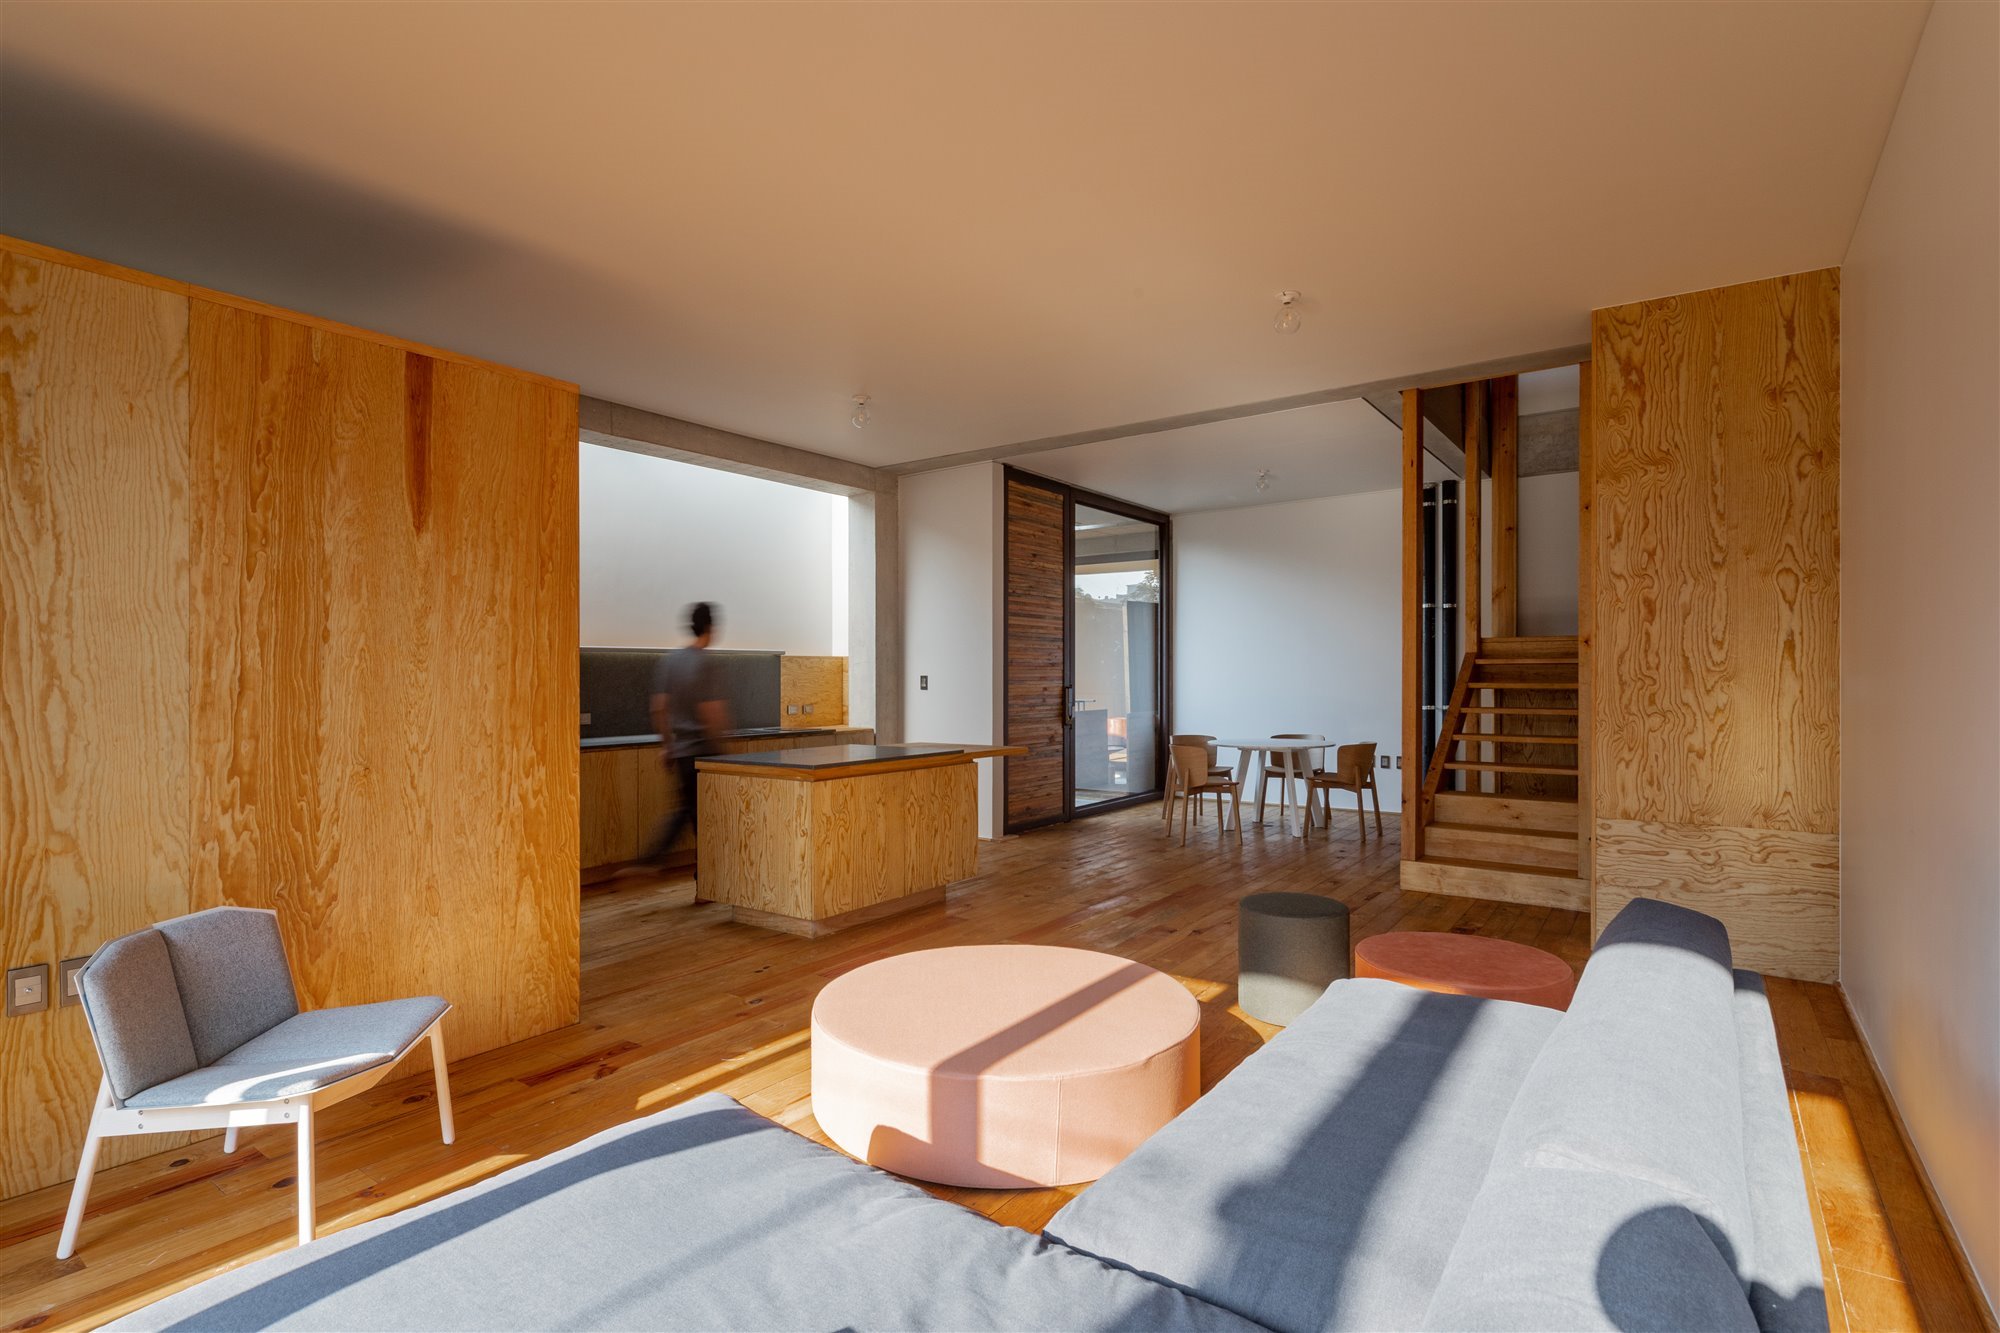 Apartamentos moderns en Mexico de lujo con interiores de madera salon